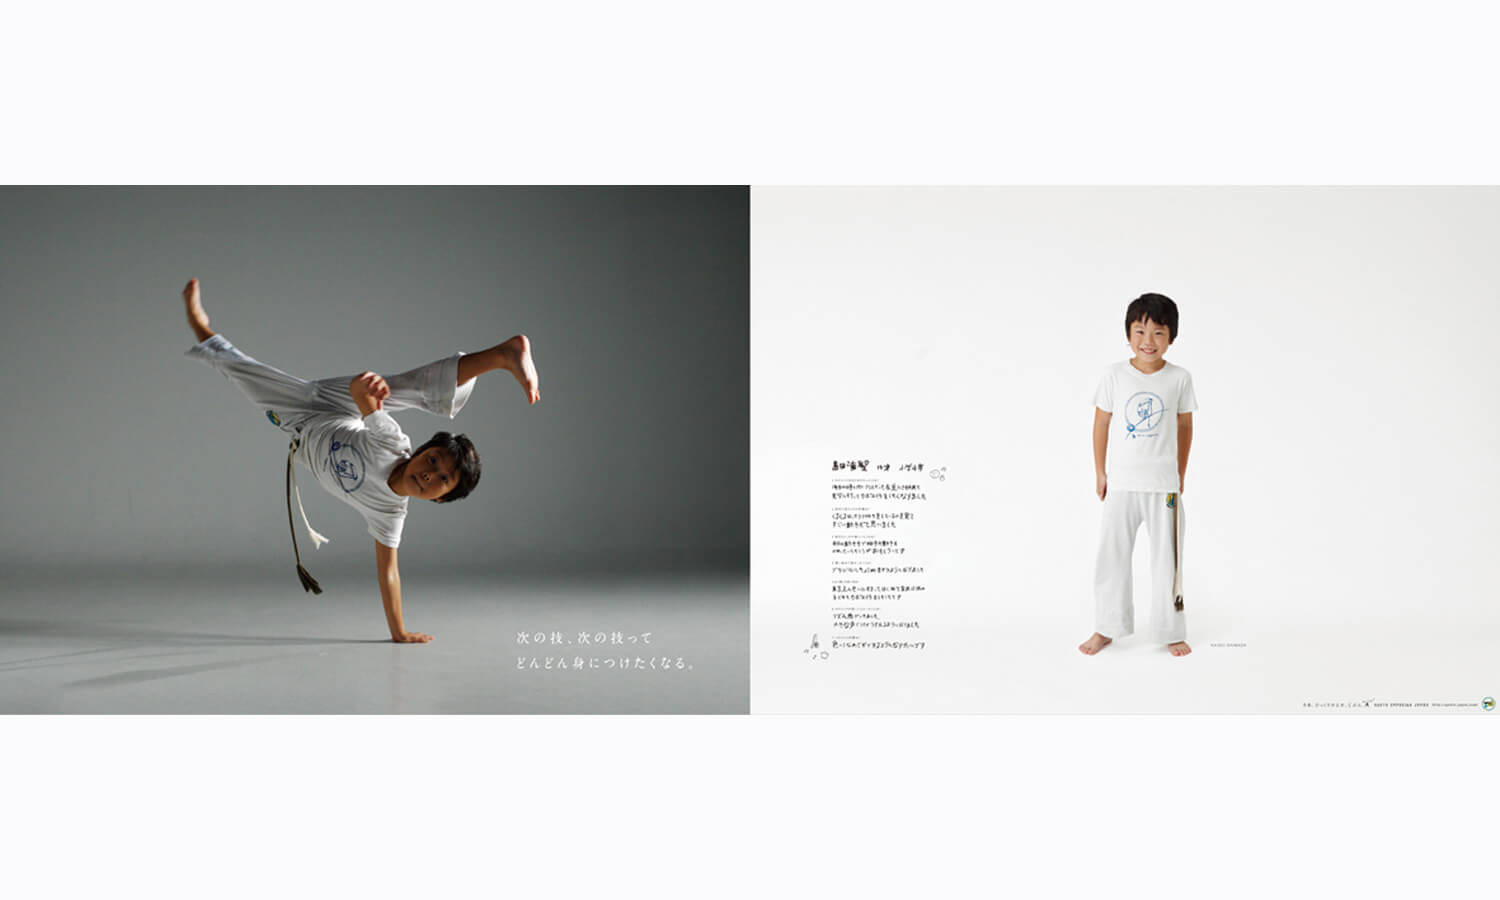 Gueto Capoeira ポスター パンフレット ワ ザ ナ カ 金沢の広告制作